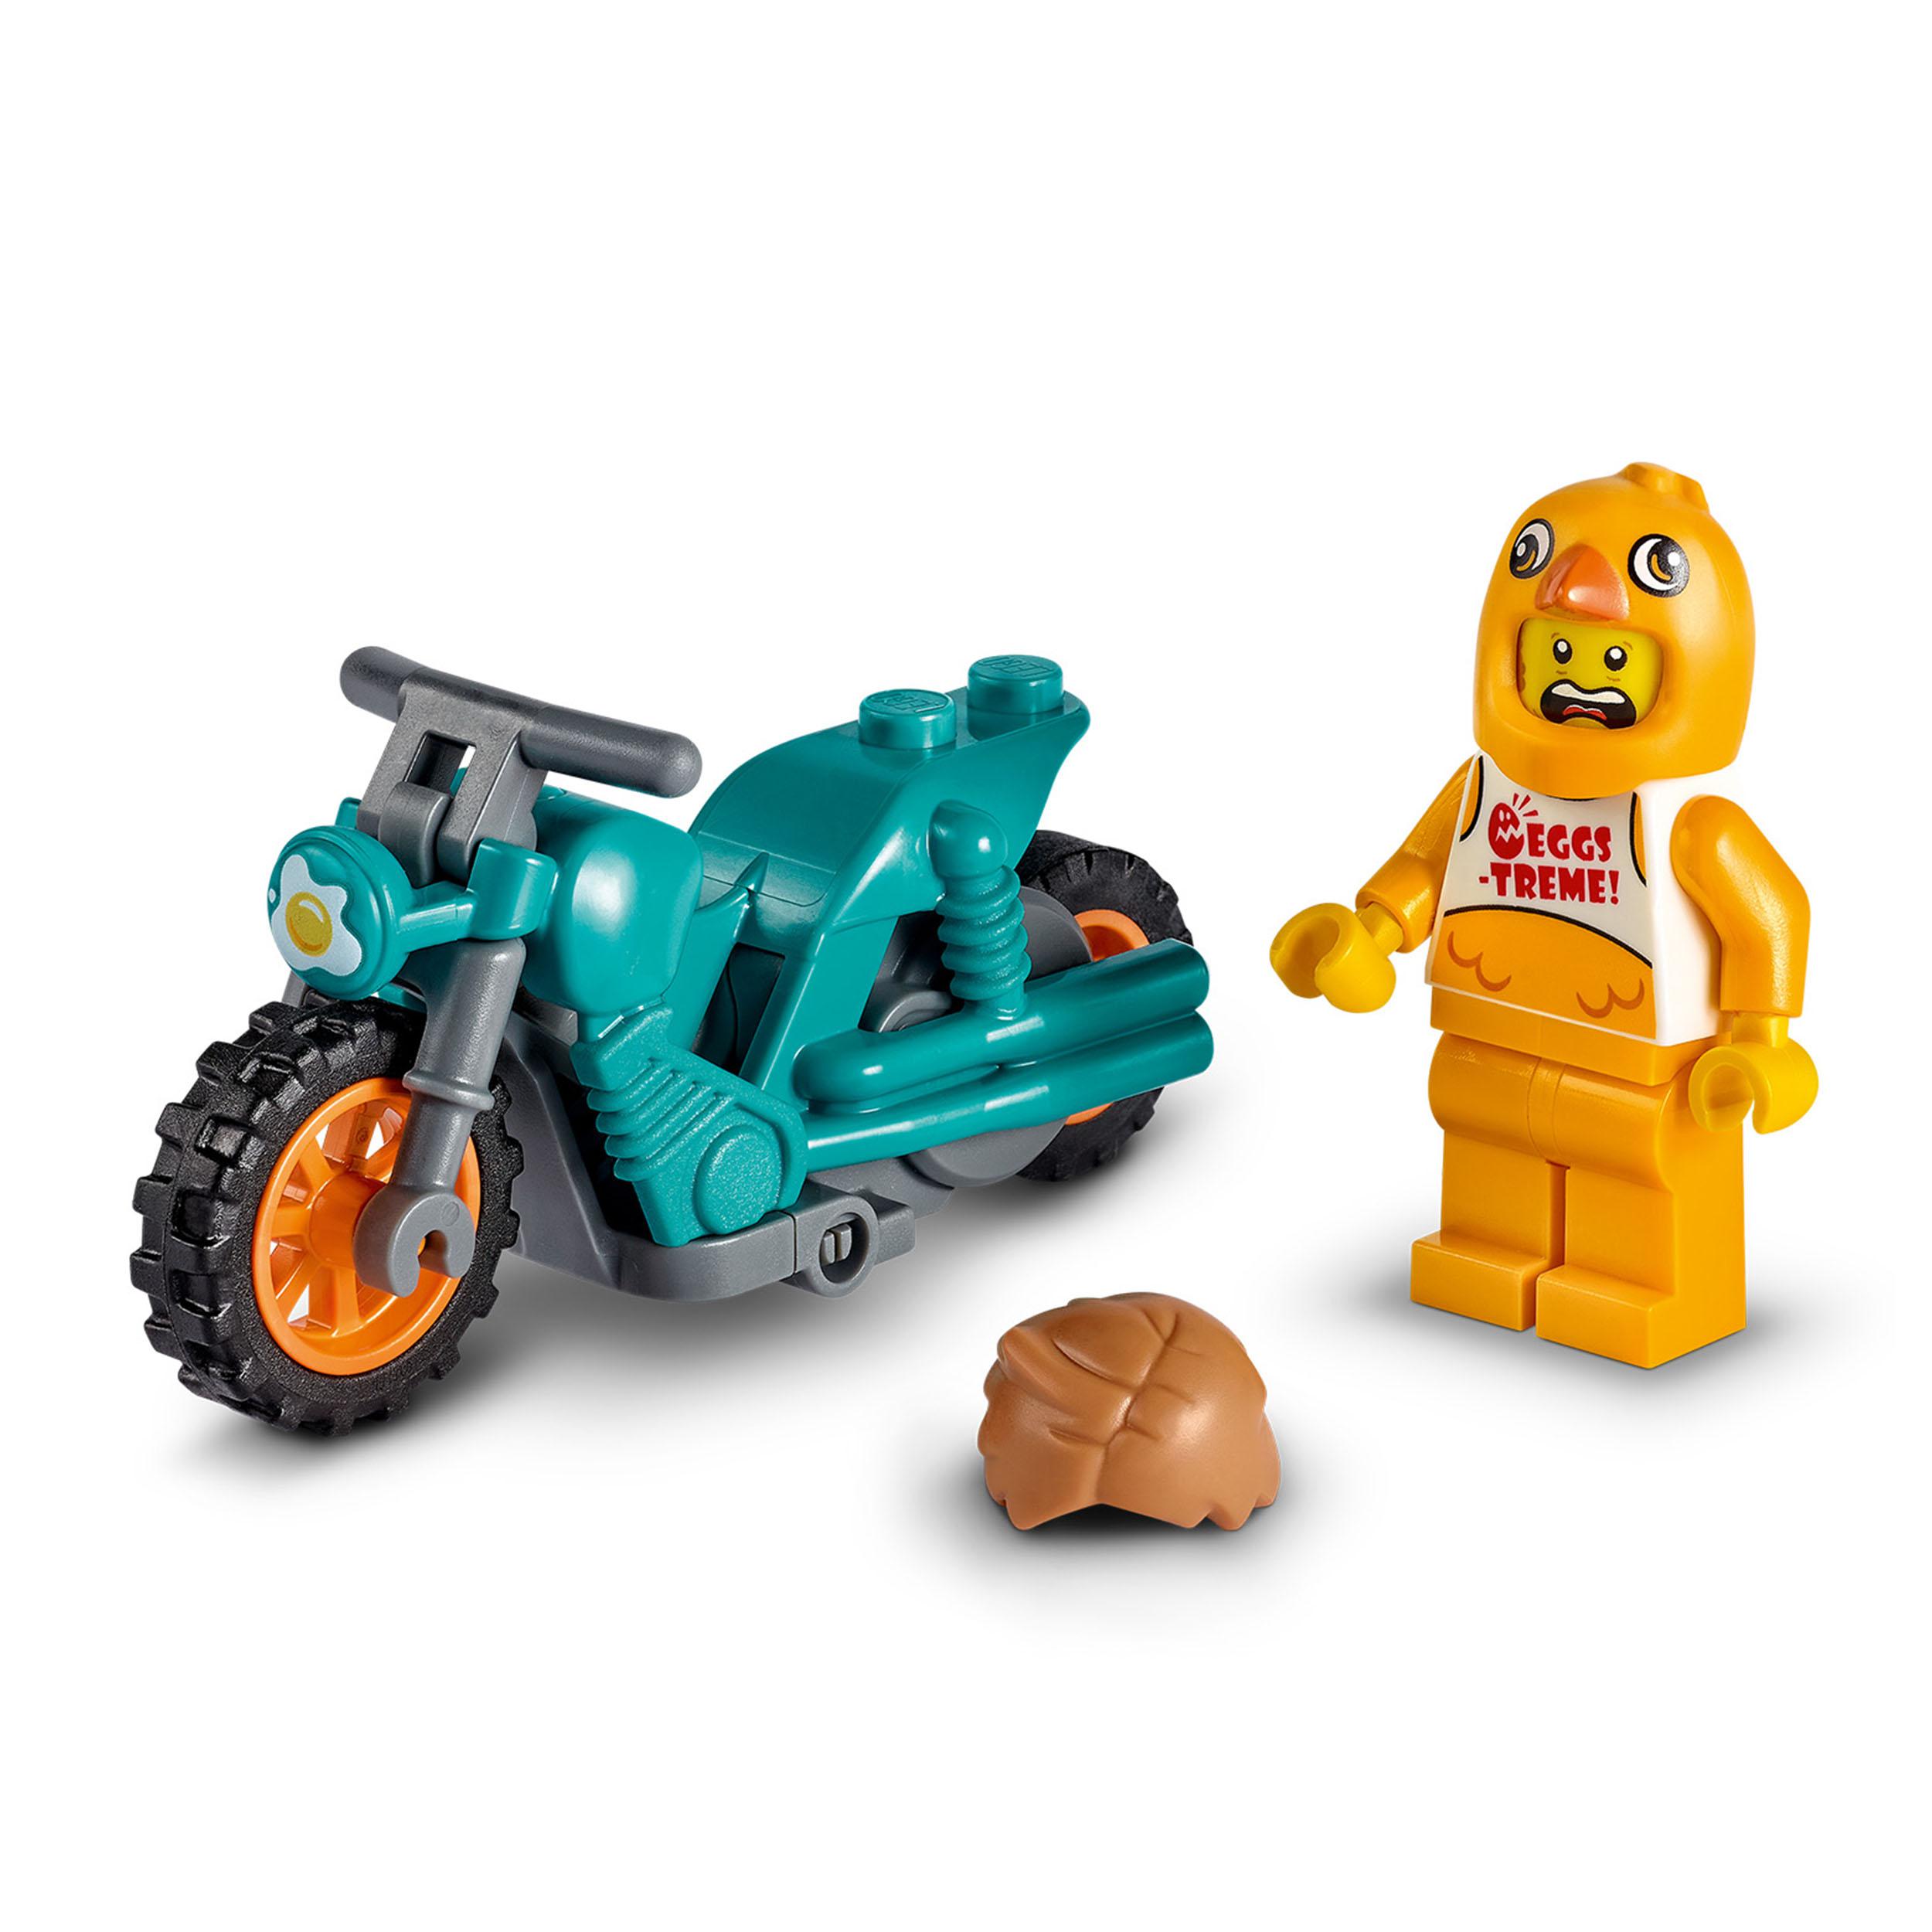 LEGO City Stuntz Stunt Bike della Gallina, Moto Giocattolo con Funzione 60310, , large